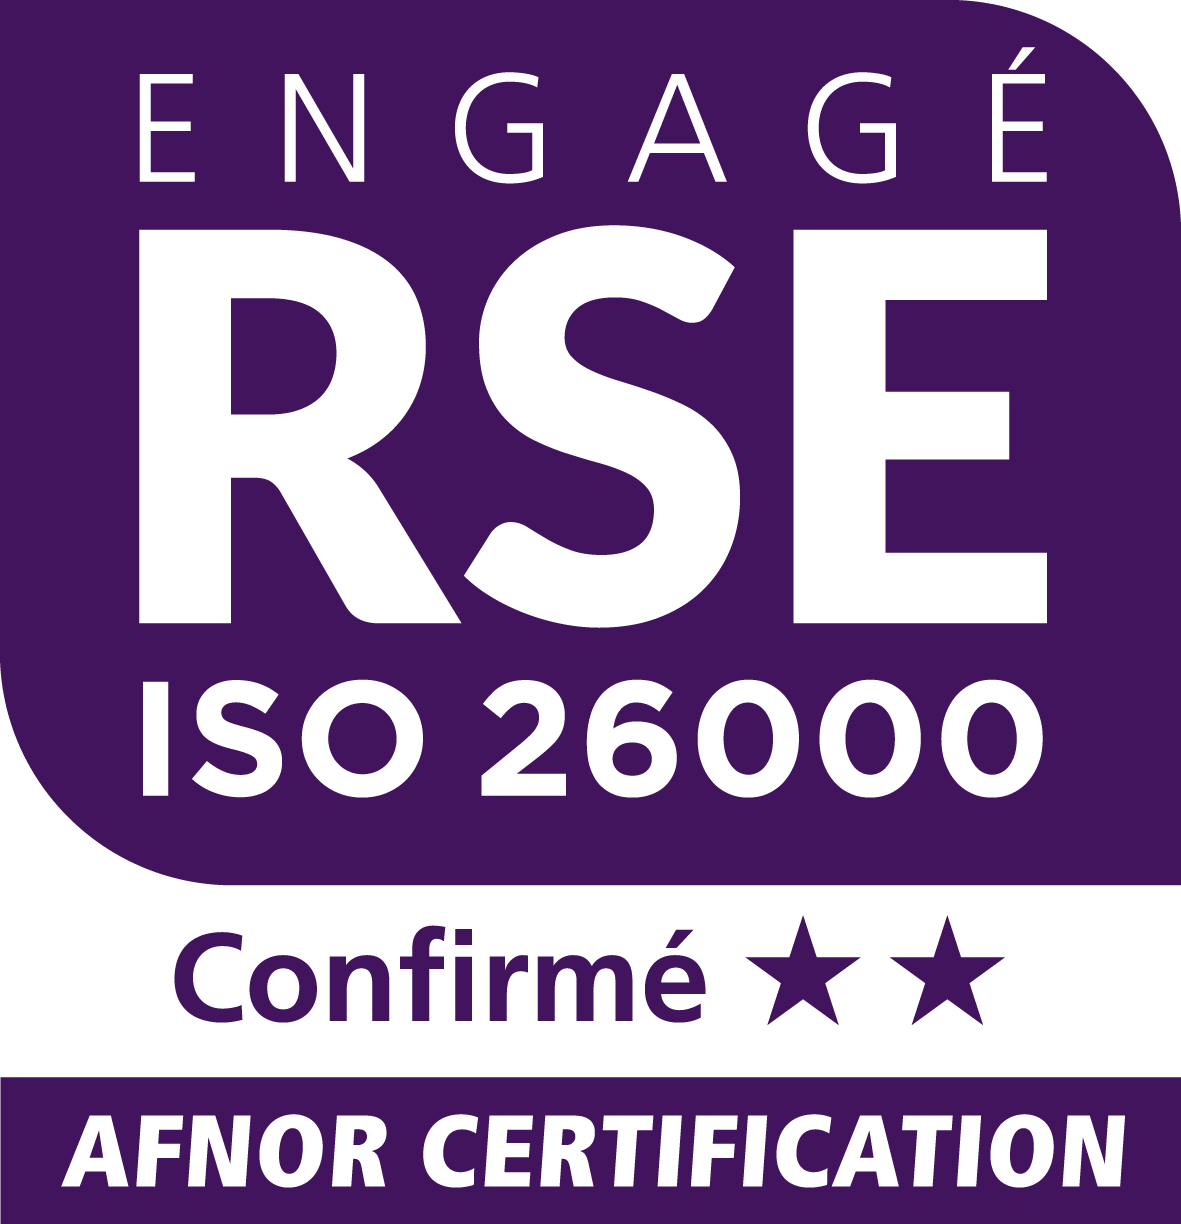 Engagé RSE ISO 26000 Confirmé AFNOR Certification